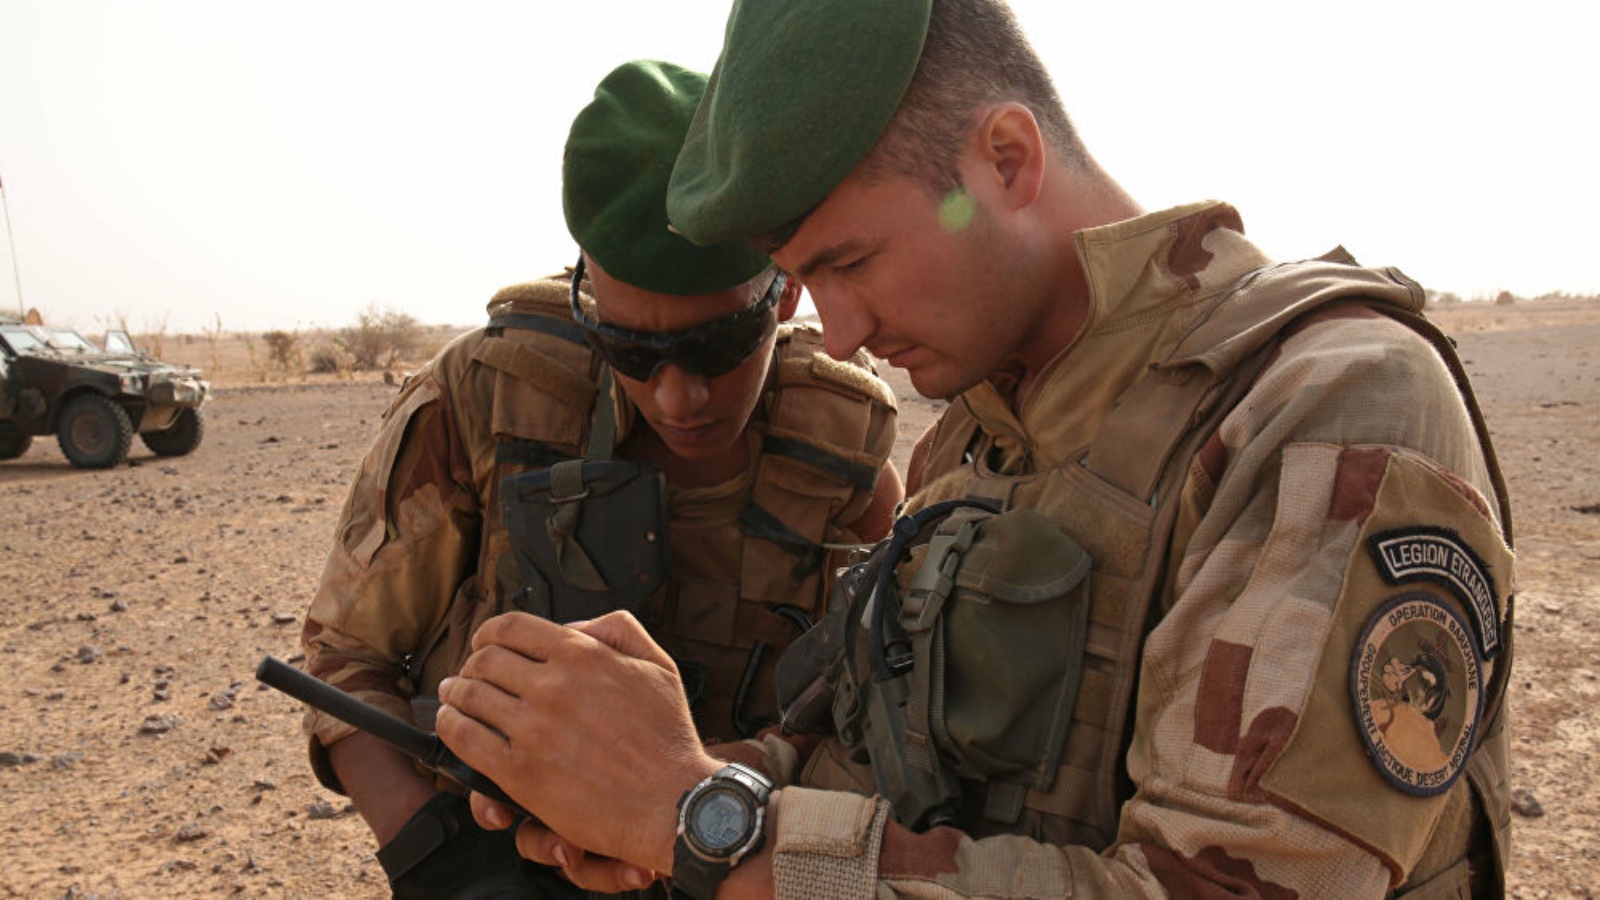 مجموعة جهادية تتبنى مقل جنديين فرنسيين في مالي